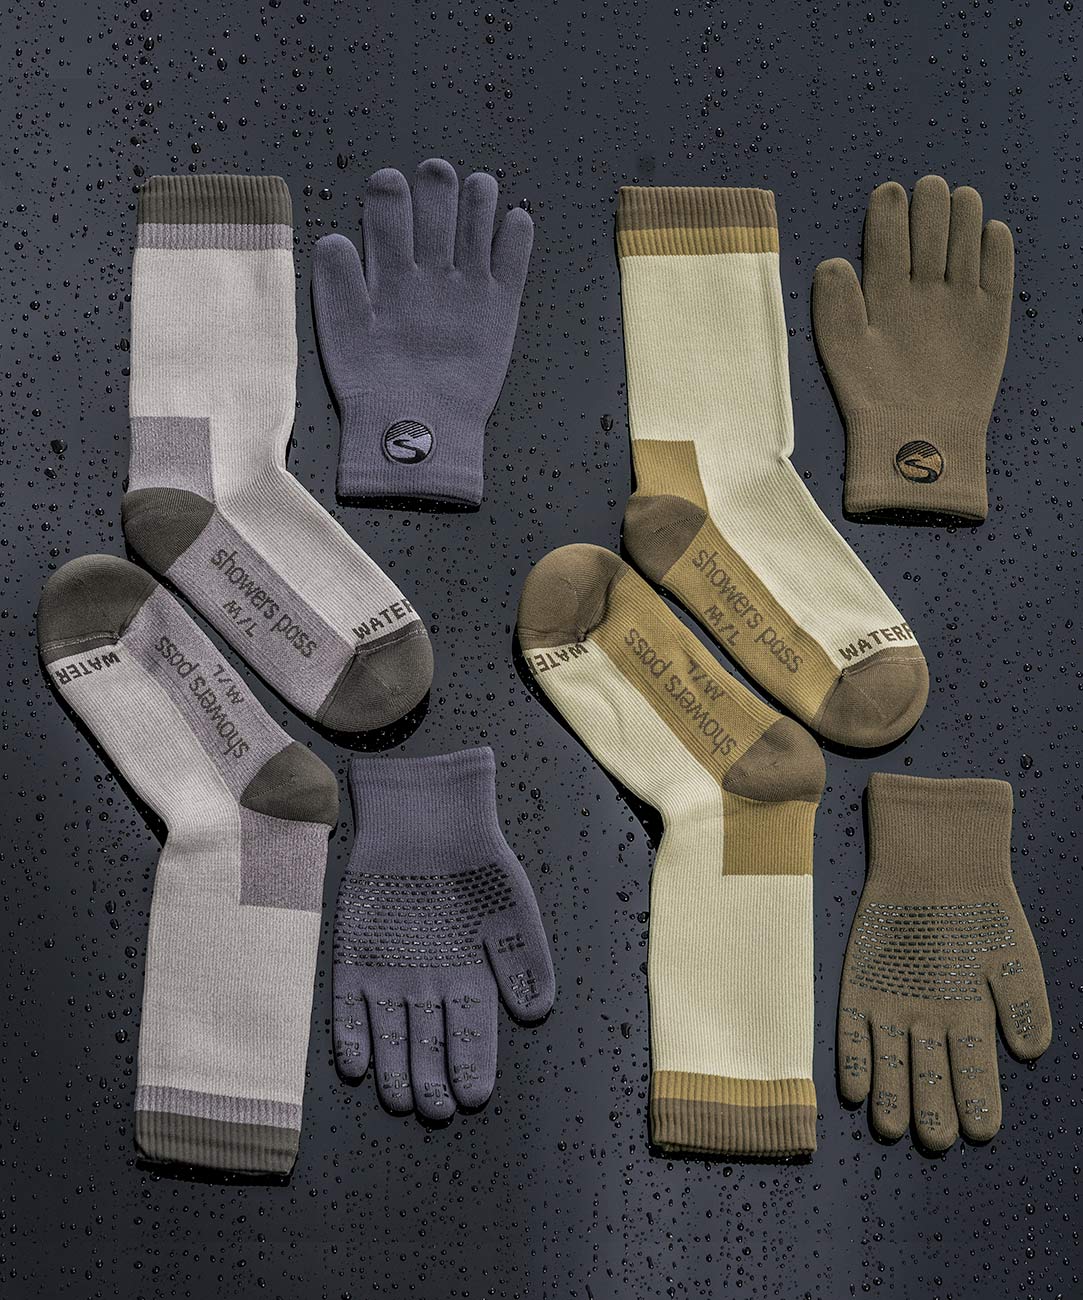 Crosspoint Waterproof Knit Wool Gloves